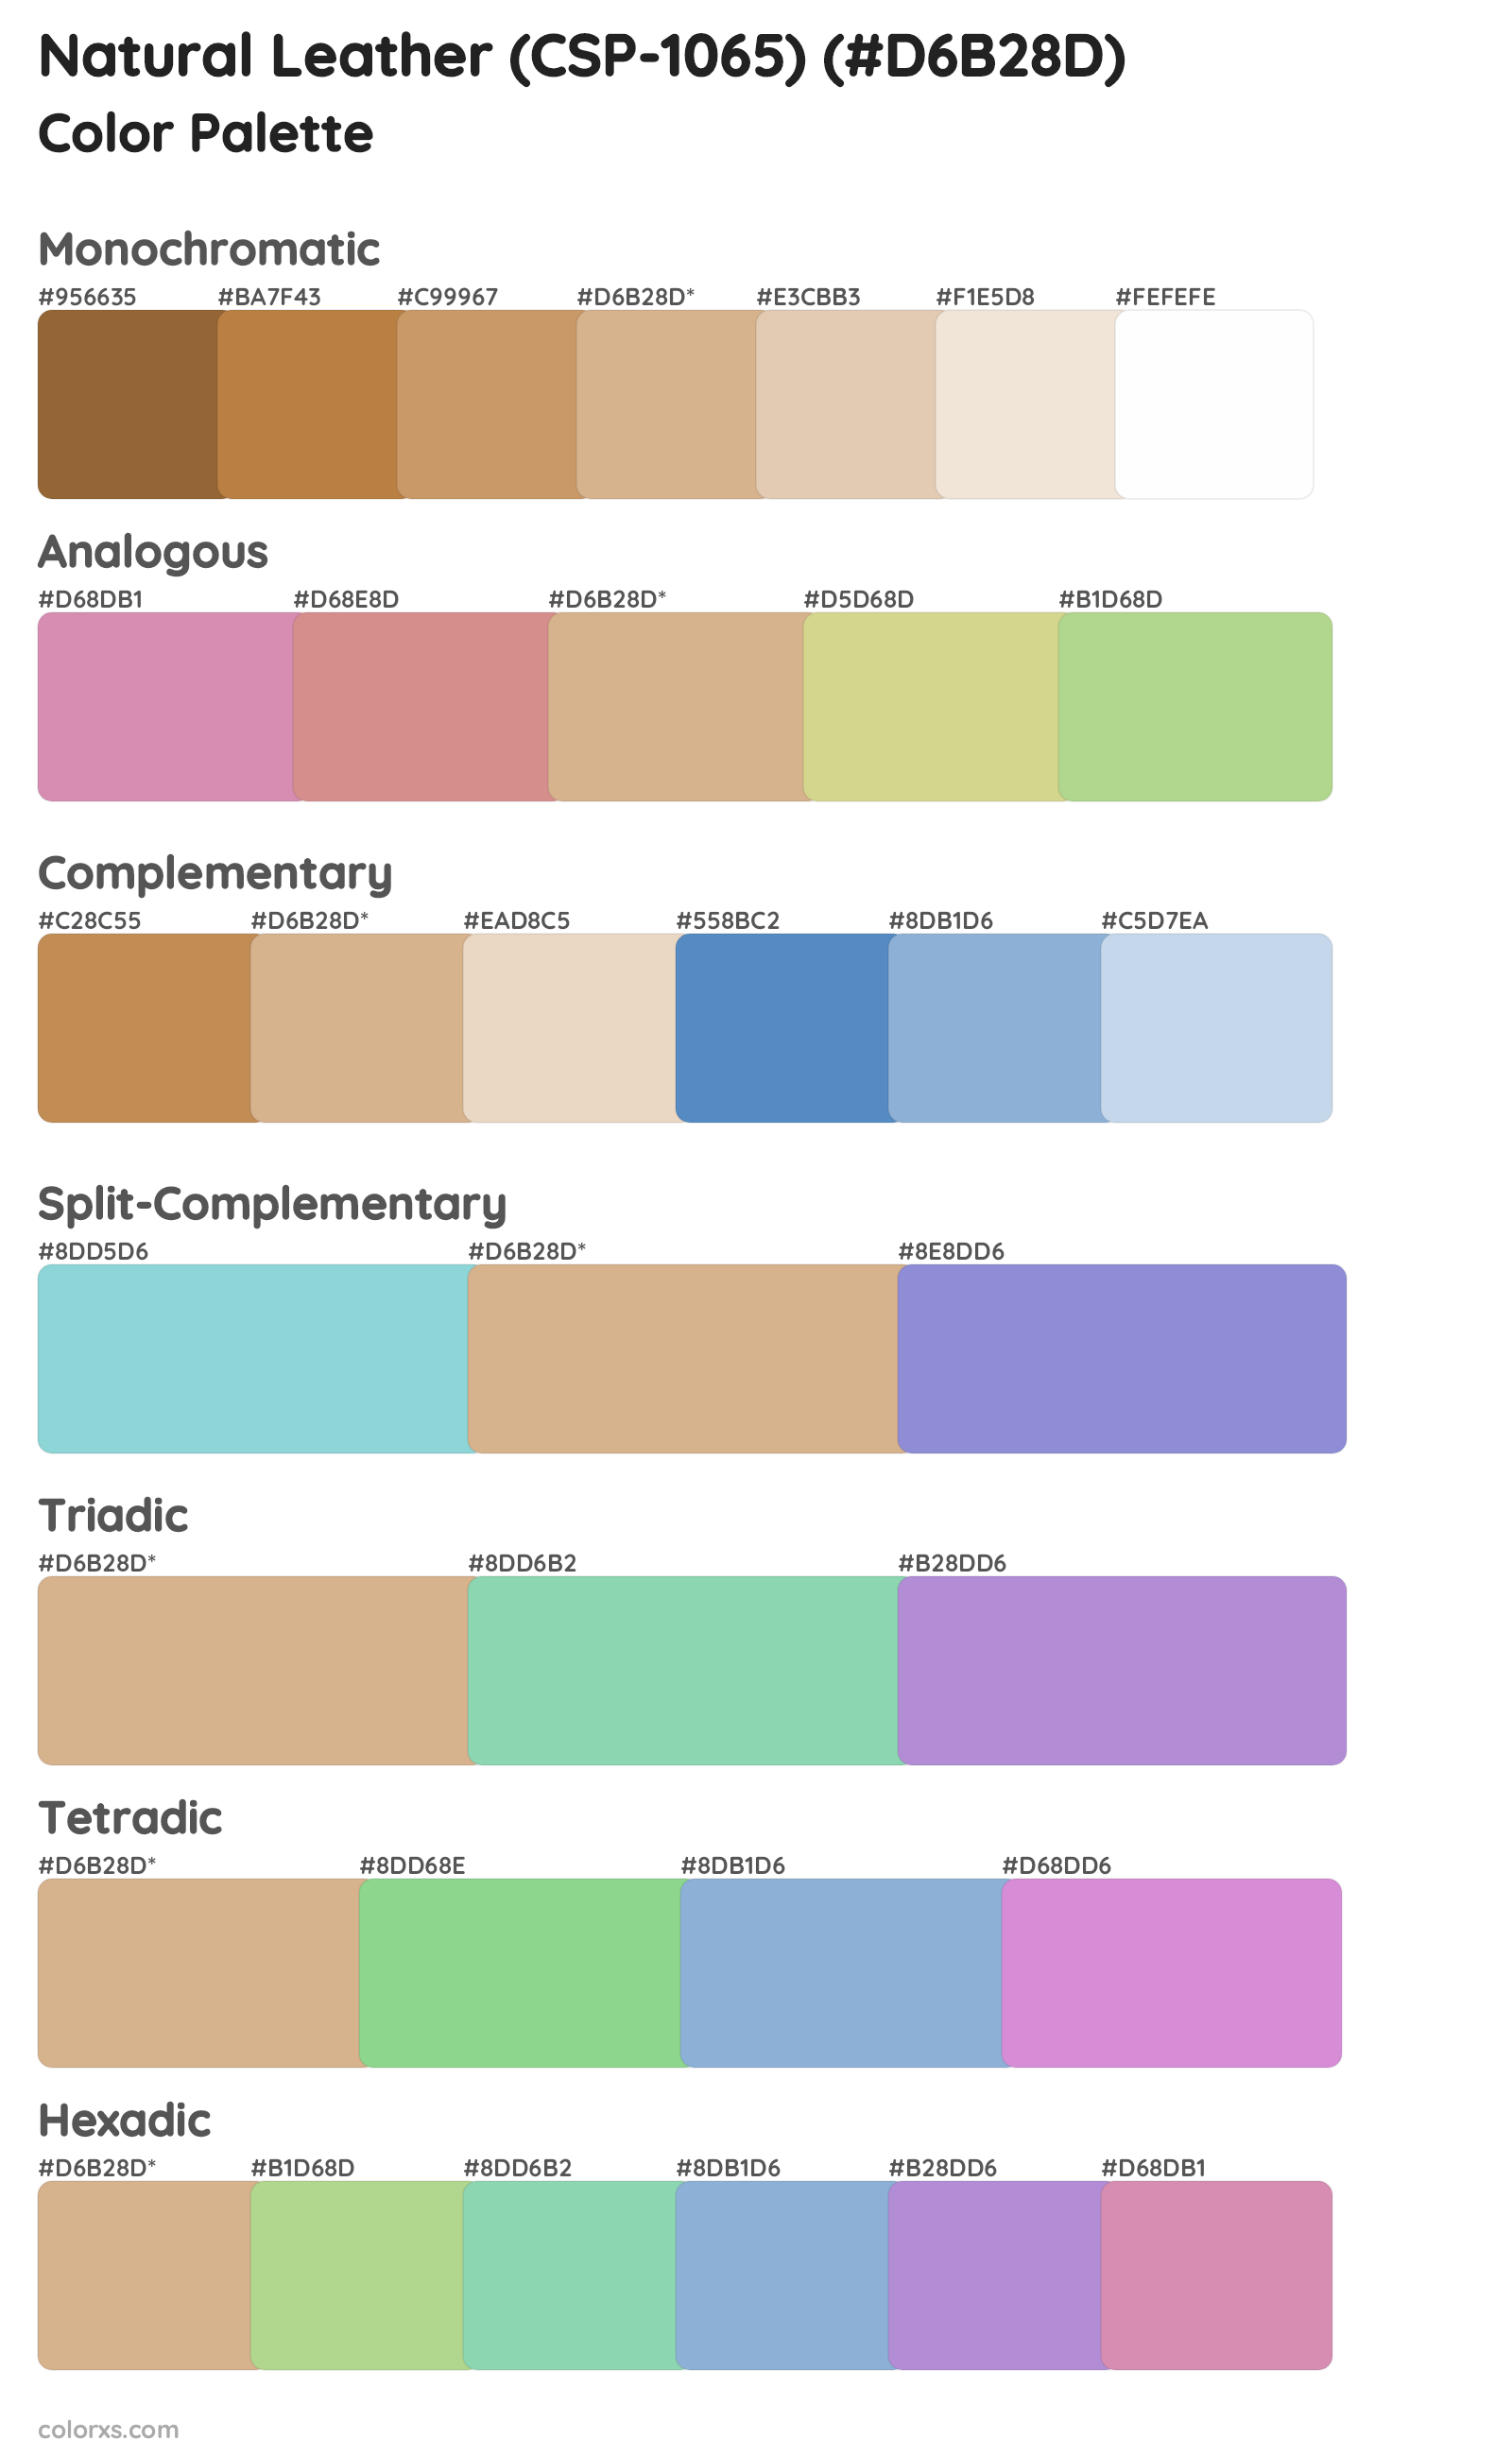 Natural Leather (CSP-1065) Color Scheme Palettes